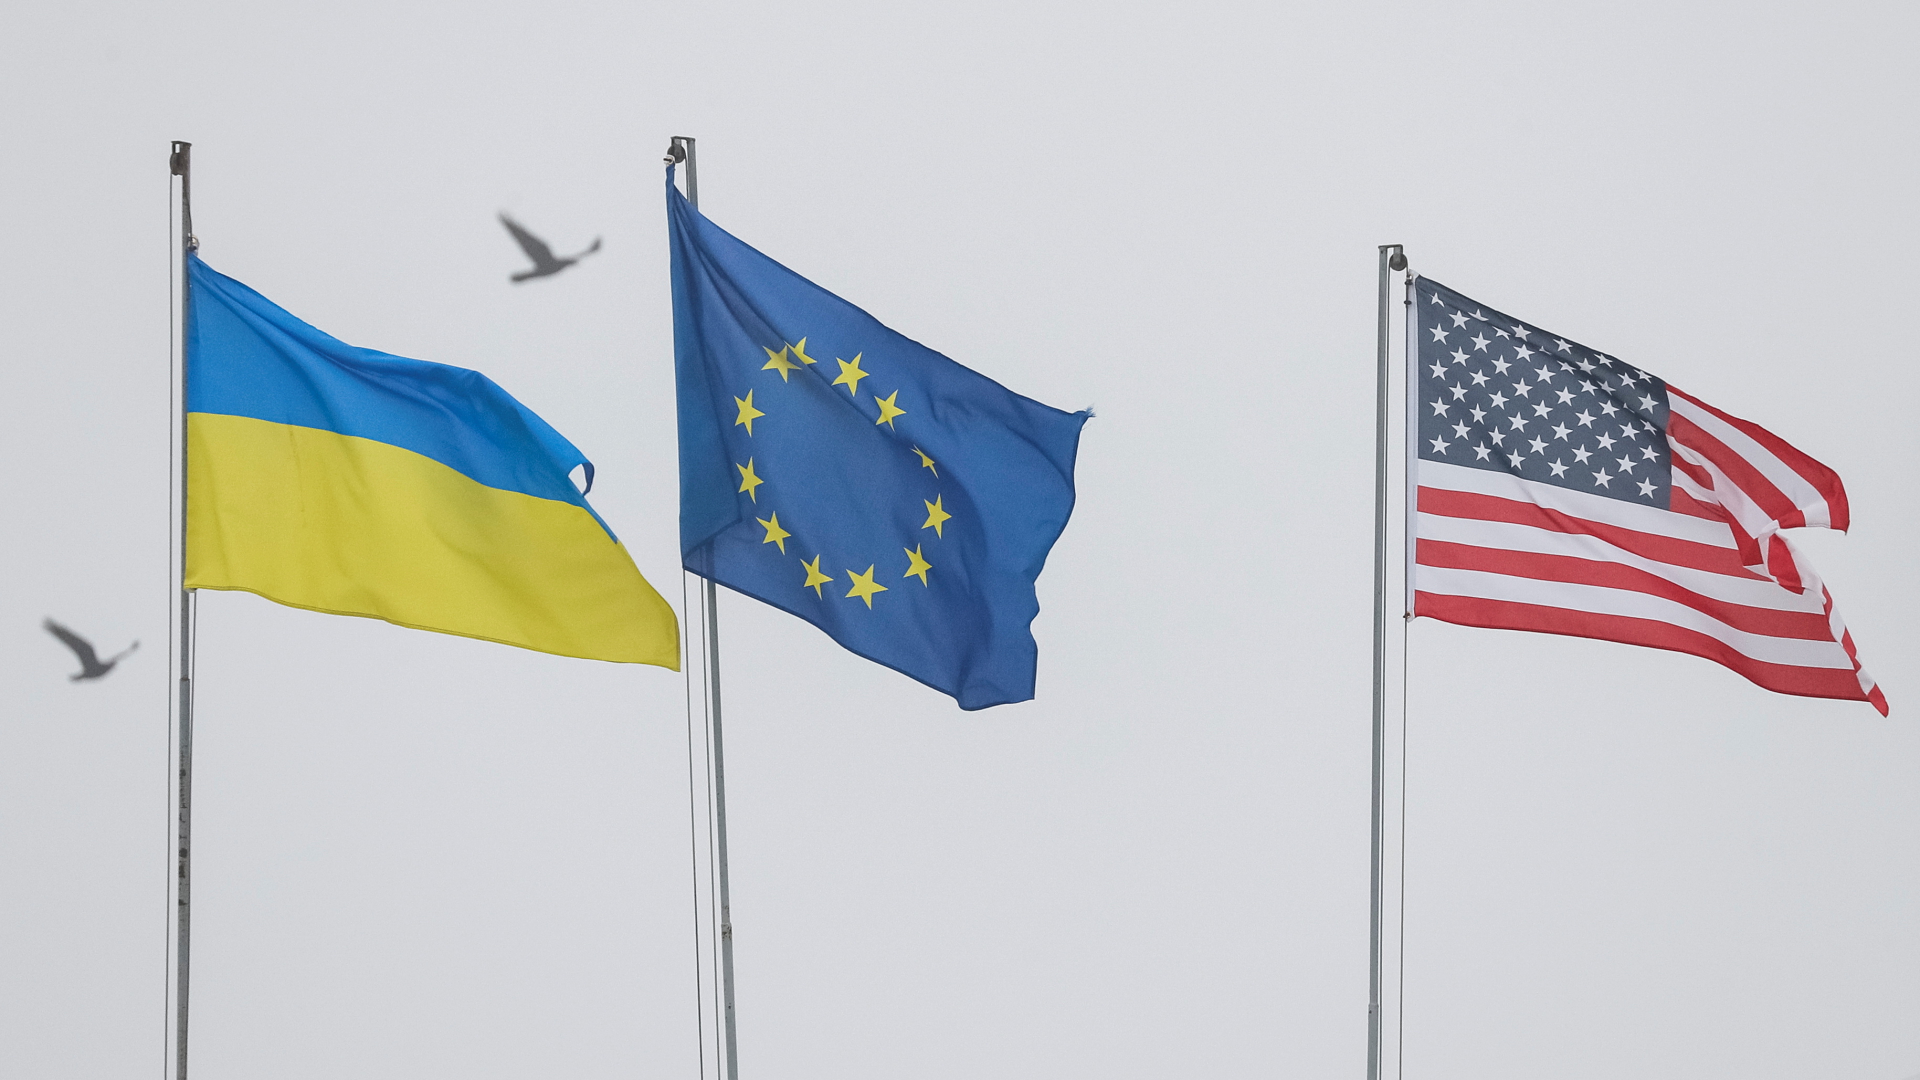 Flaggen der Ukraine, der Europäischen Union und den USA  | REUTERS